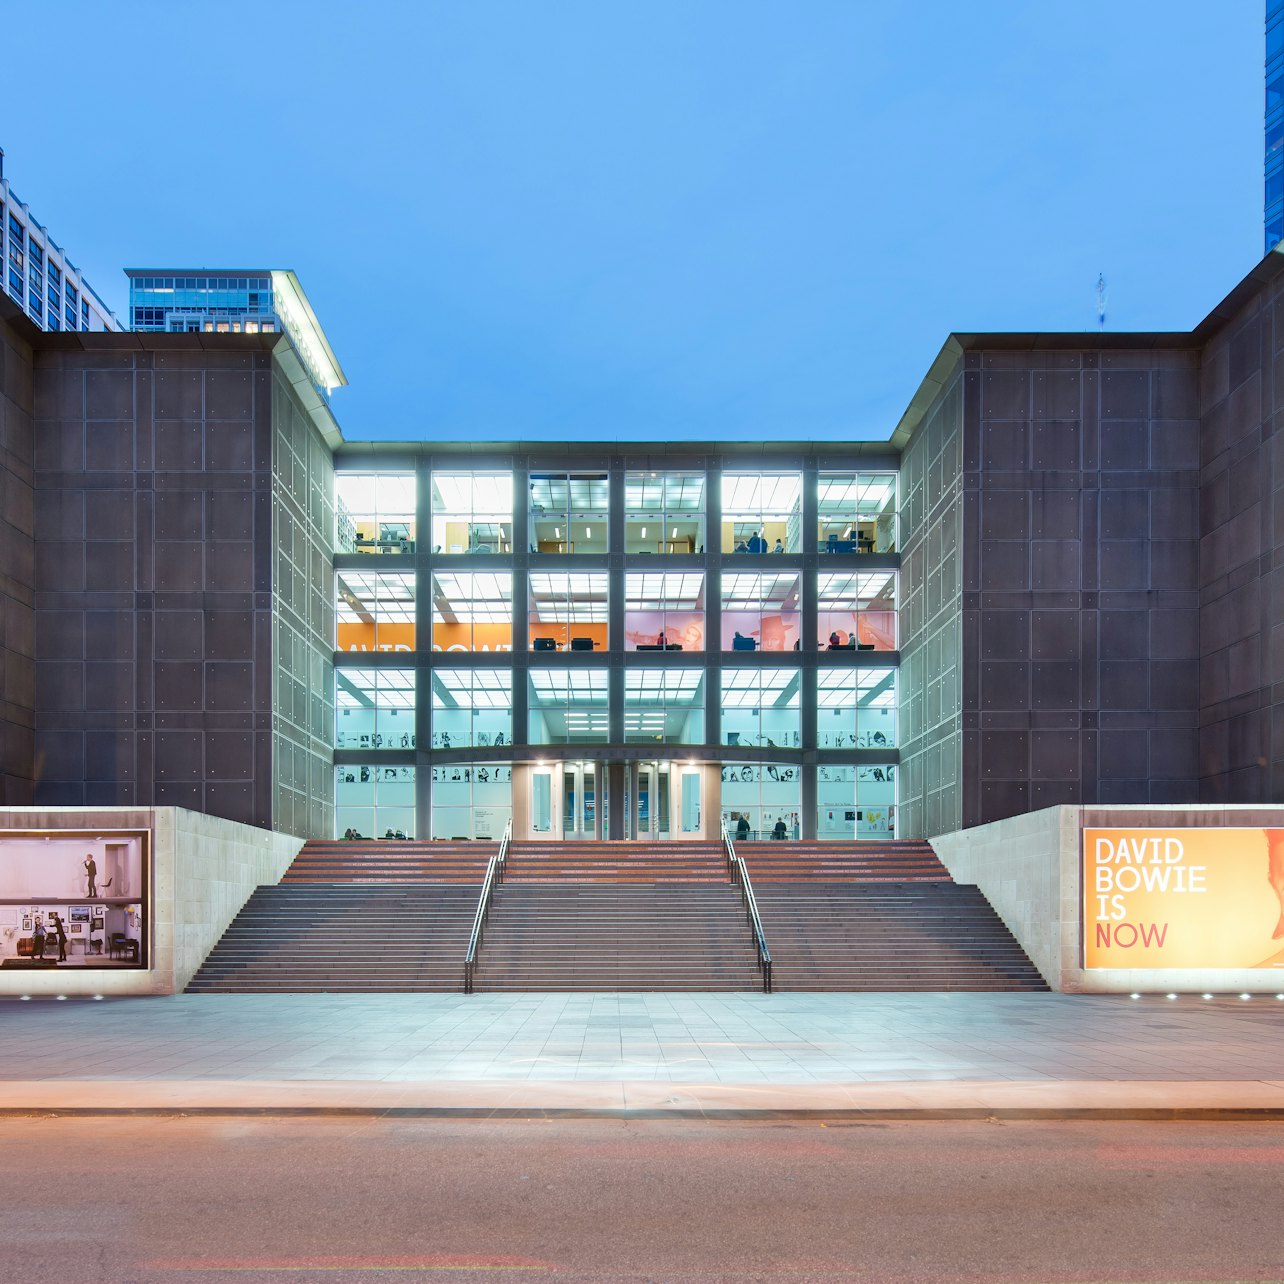 Museo de Arte Contemporáneo de Chicago (MCA) - Alojamientos en Chicago